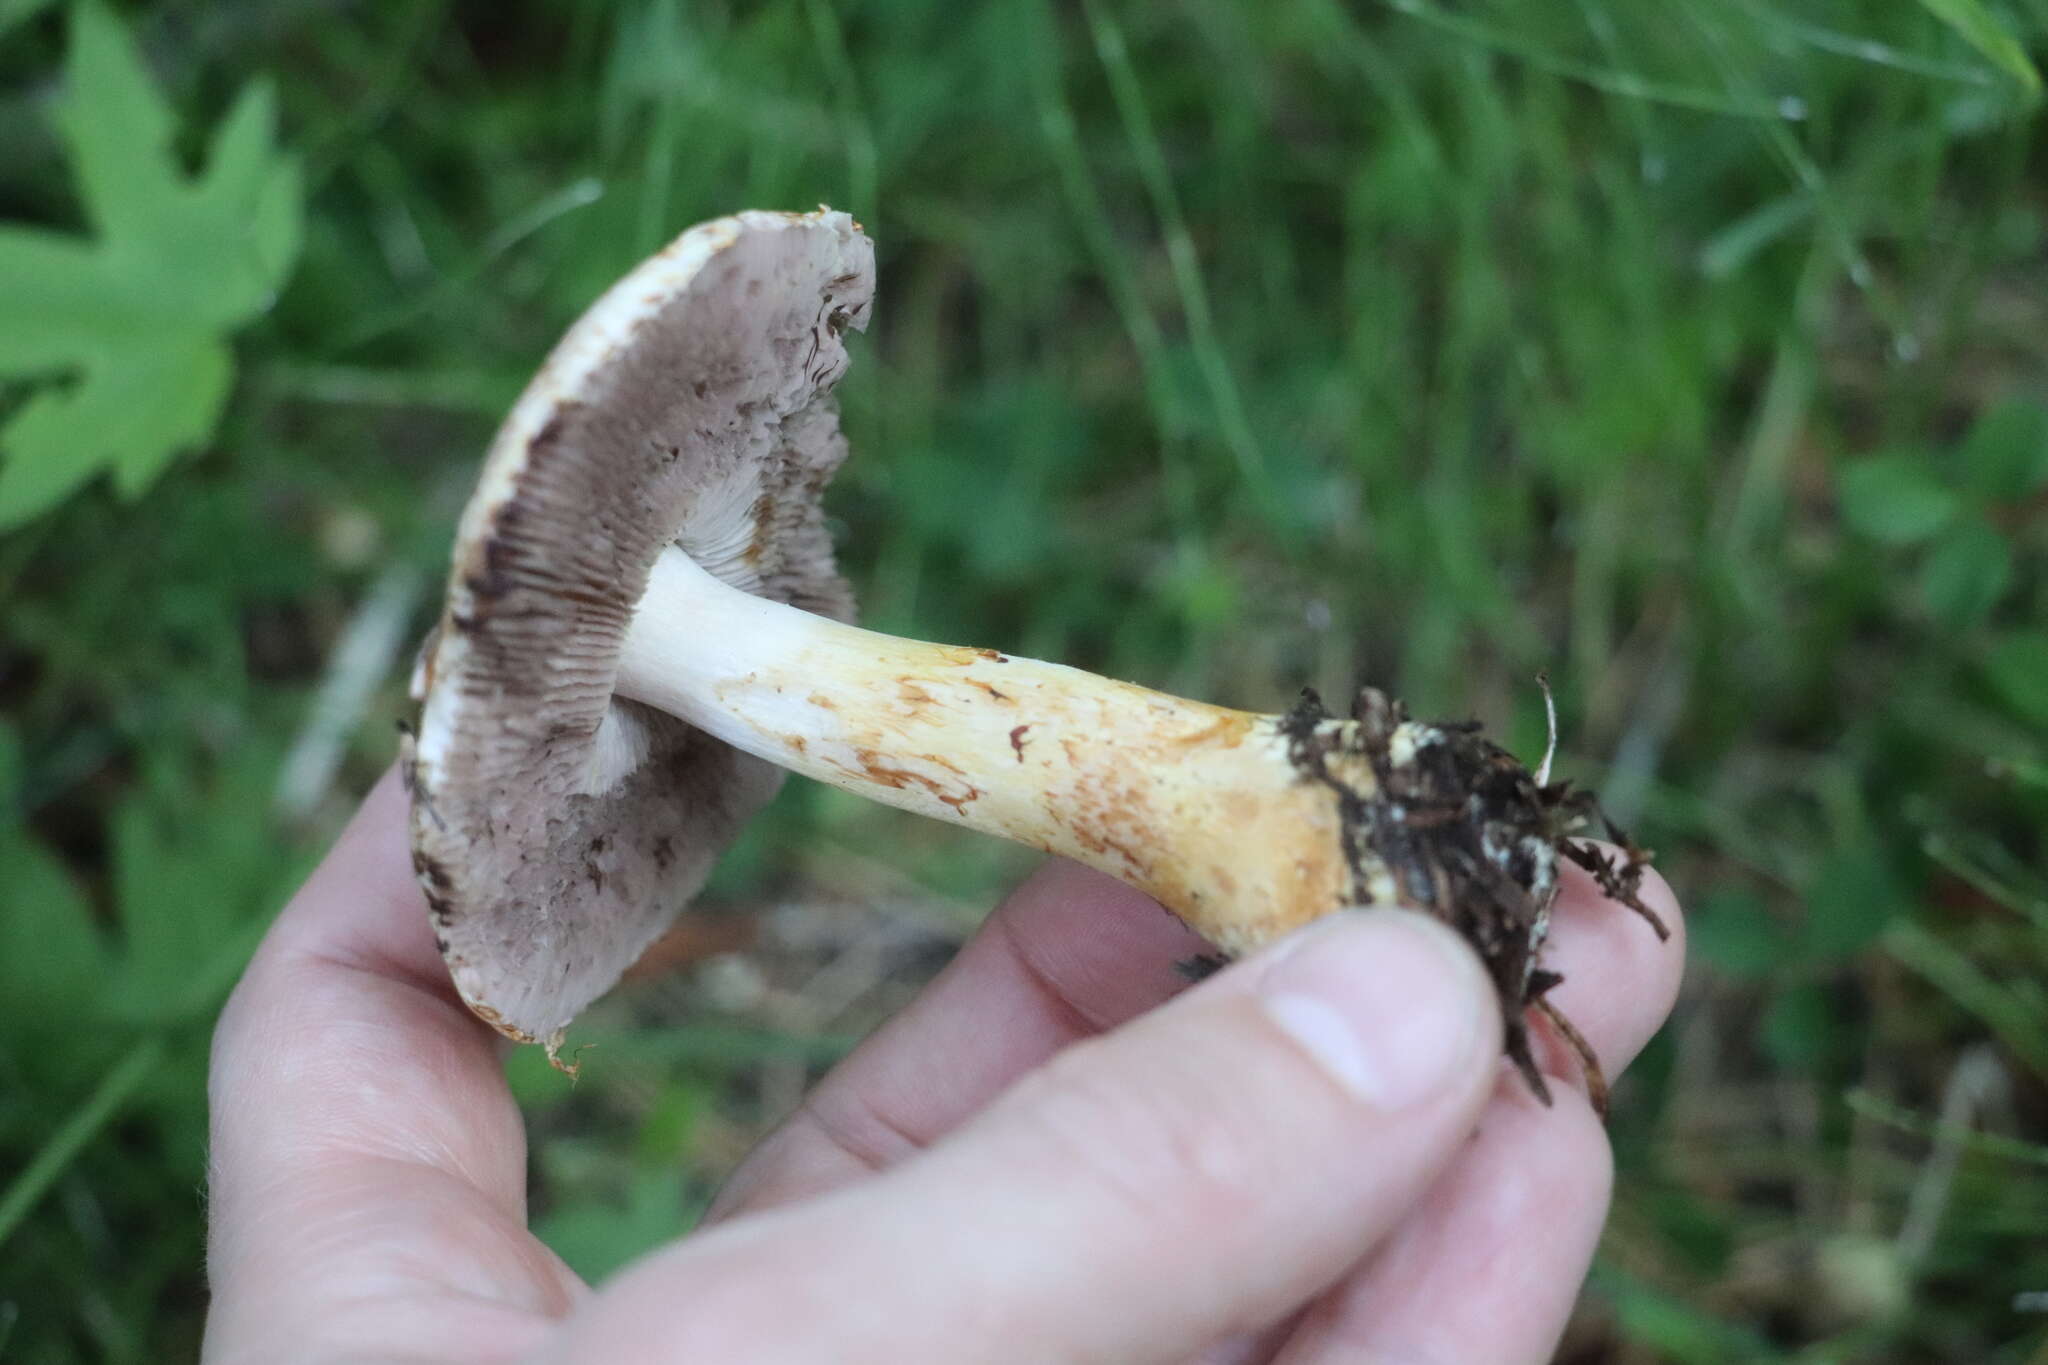 Image of Rosy Wood Mushroom